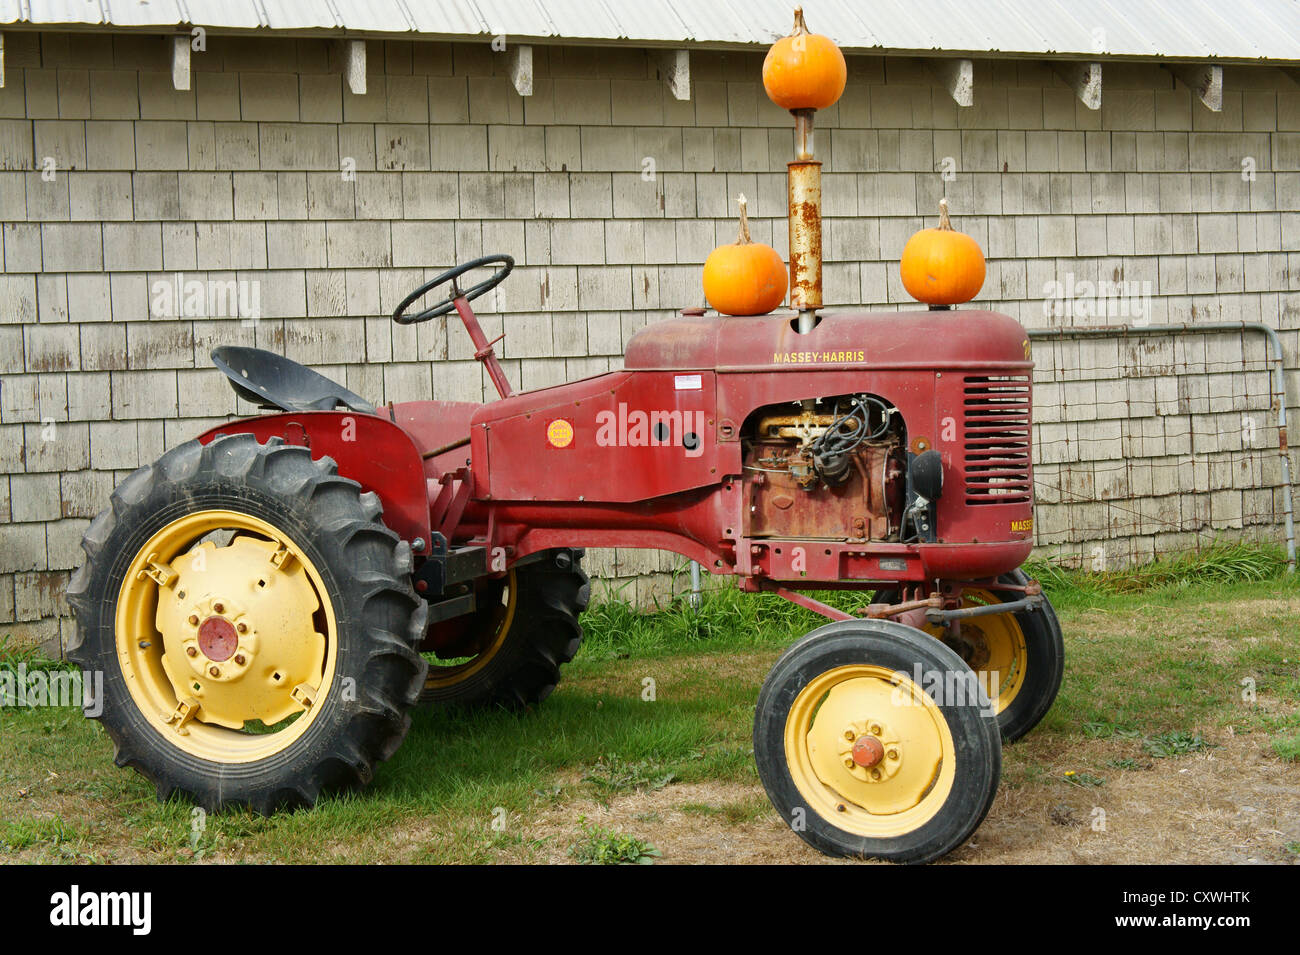 Vieux tracteur Massey Harris décorées de citrouilles dans une ferme de Delta, Ladner, British Columbia, Canada Banque D'Images